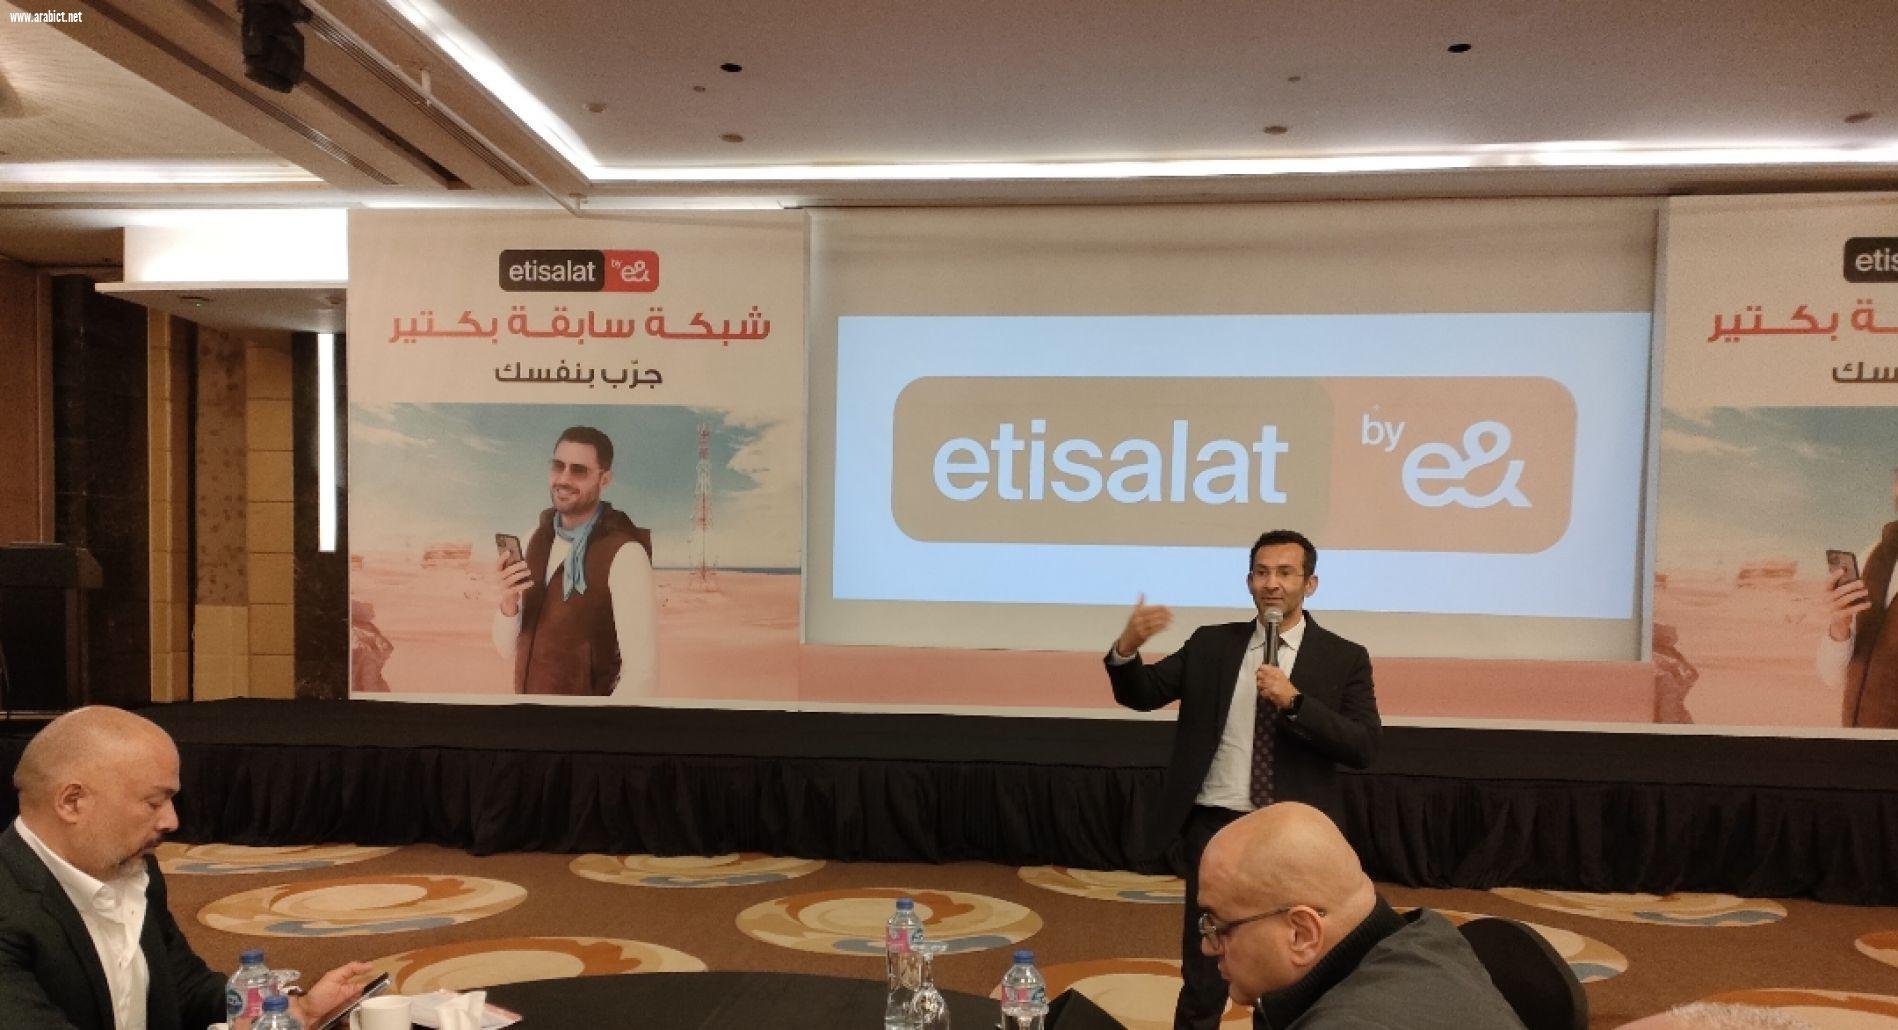 رئيس اتصالات مصر: تفعيل خدمات تكنولوجيا الجيل الخامس مرهون بما ستحققه من عوائد على الاستثمار 